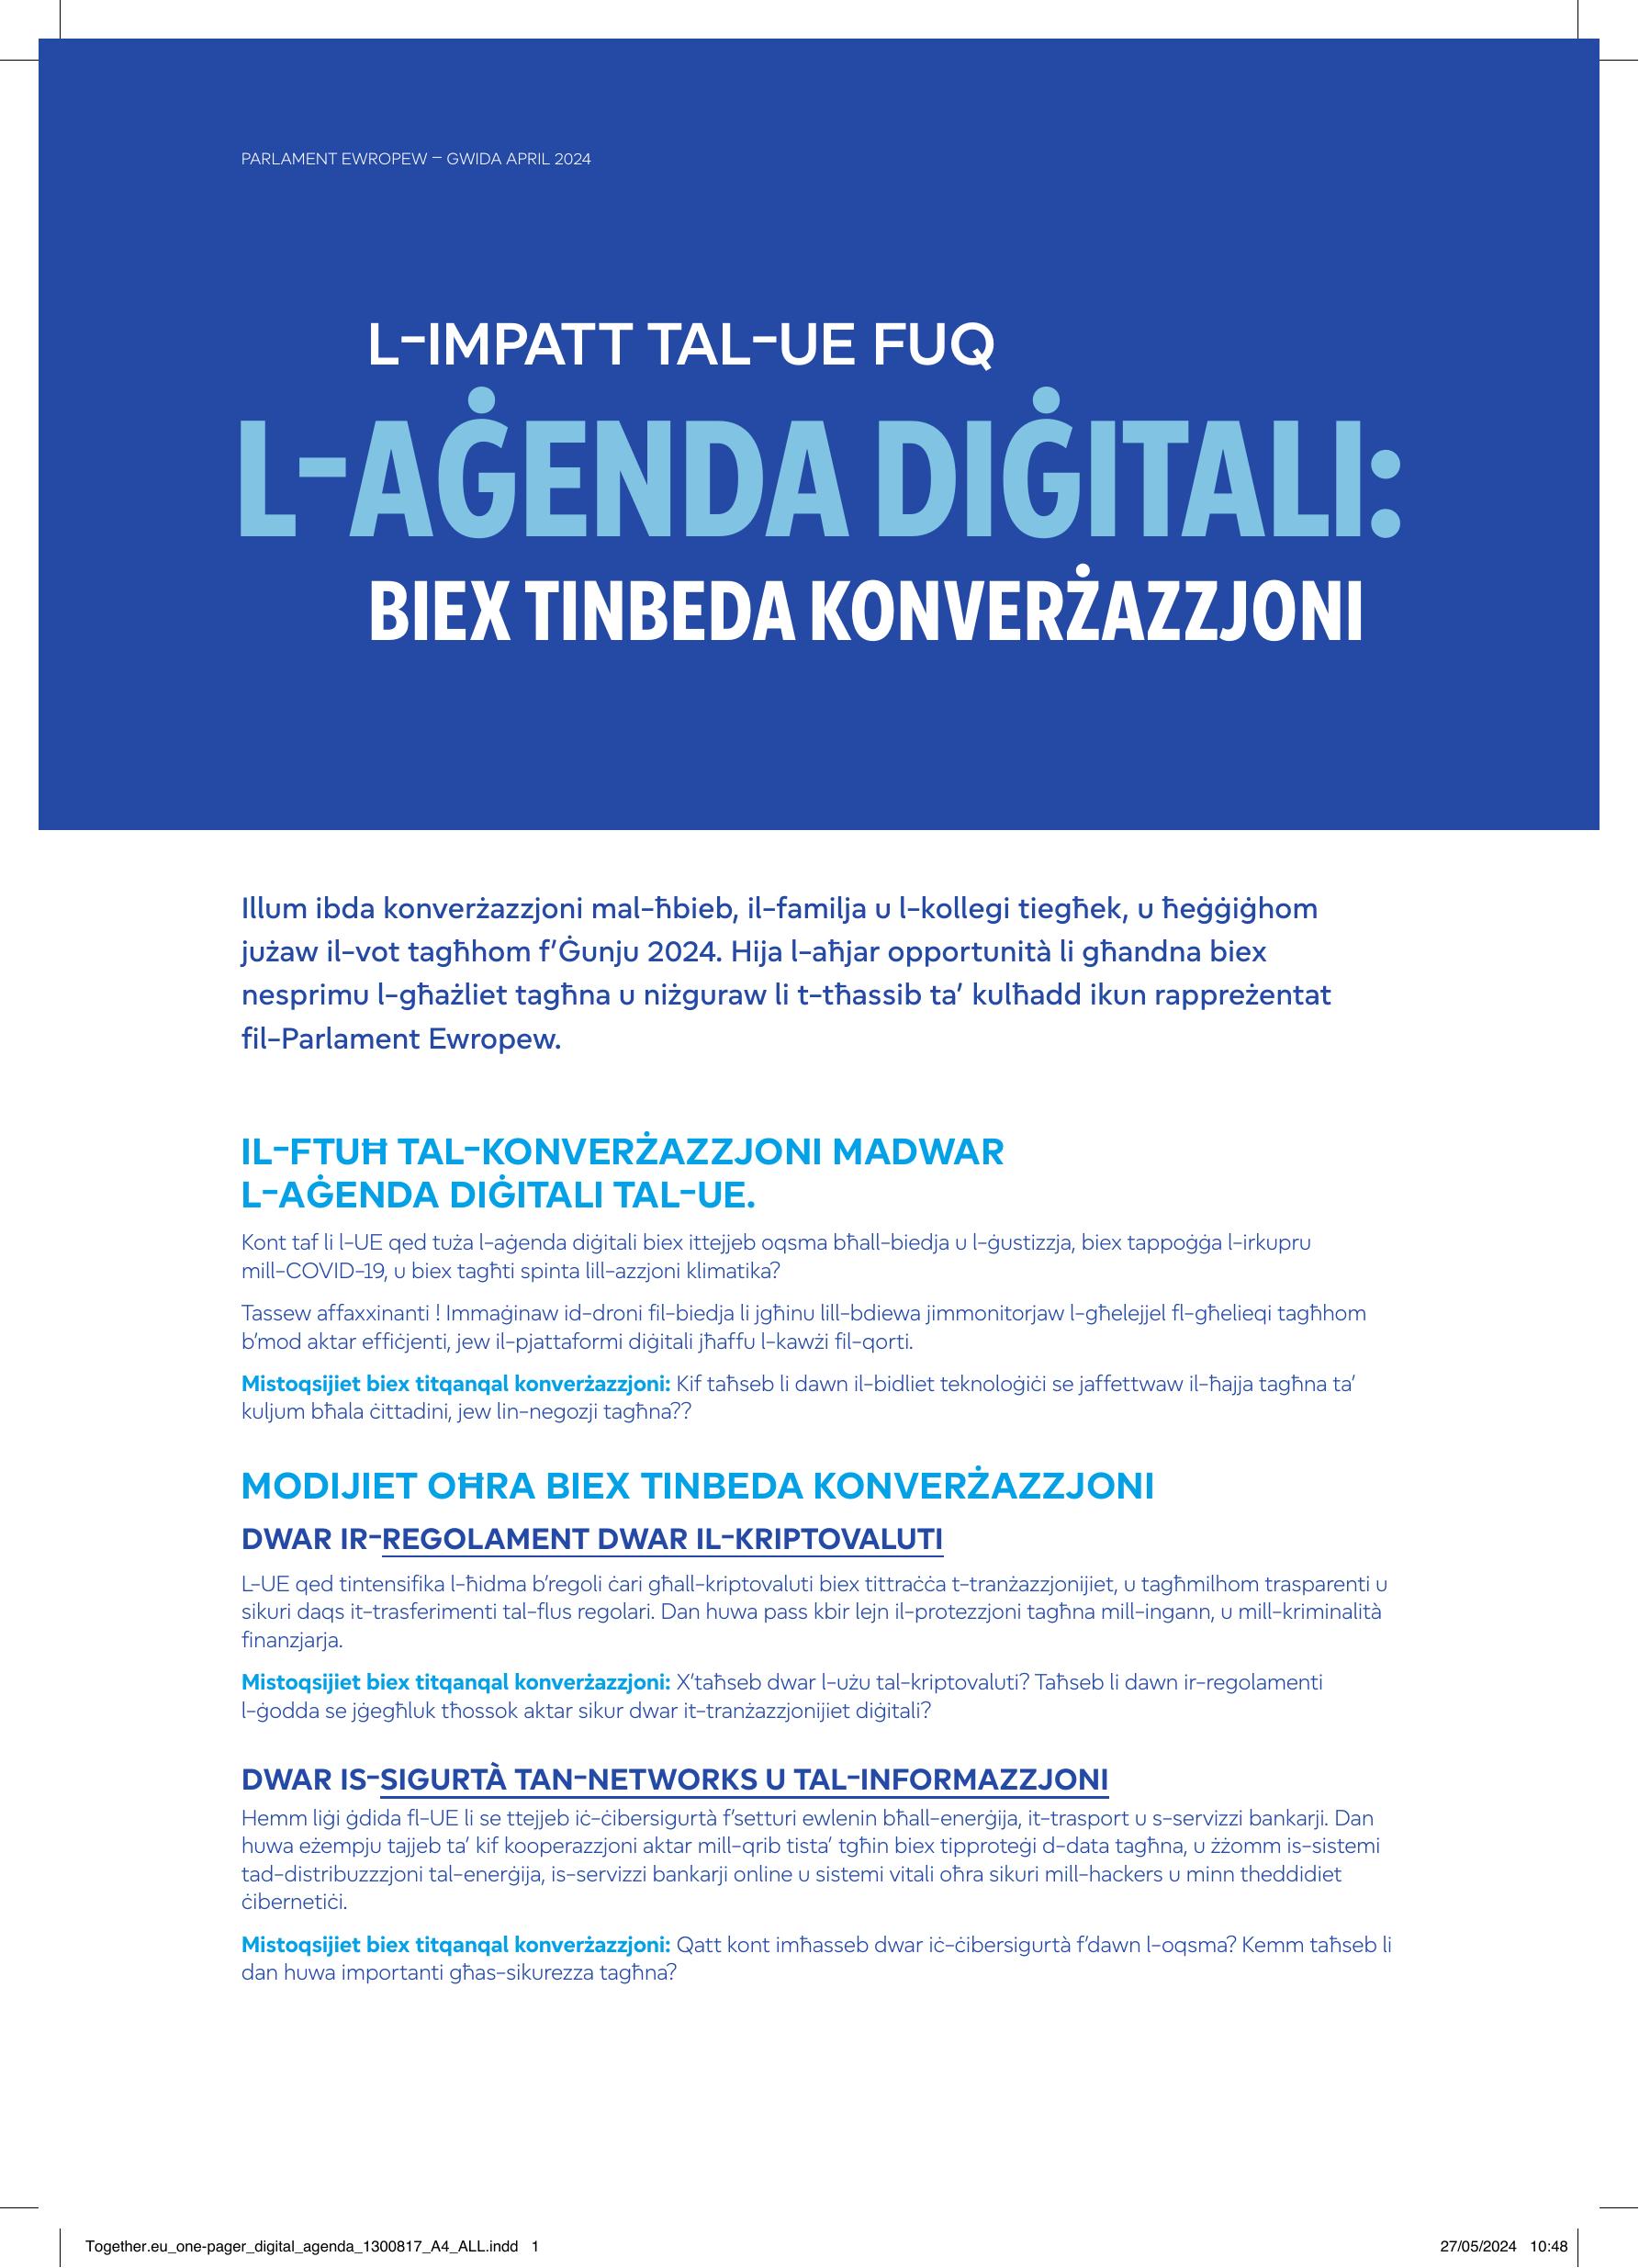 Together.eu_one-pager_digital_agenda_print.pdf